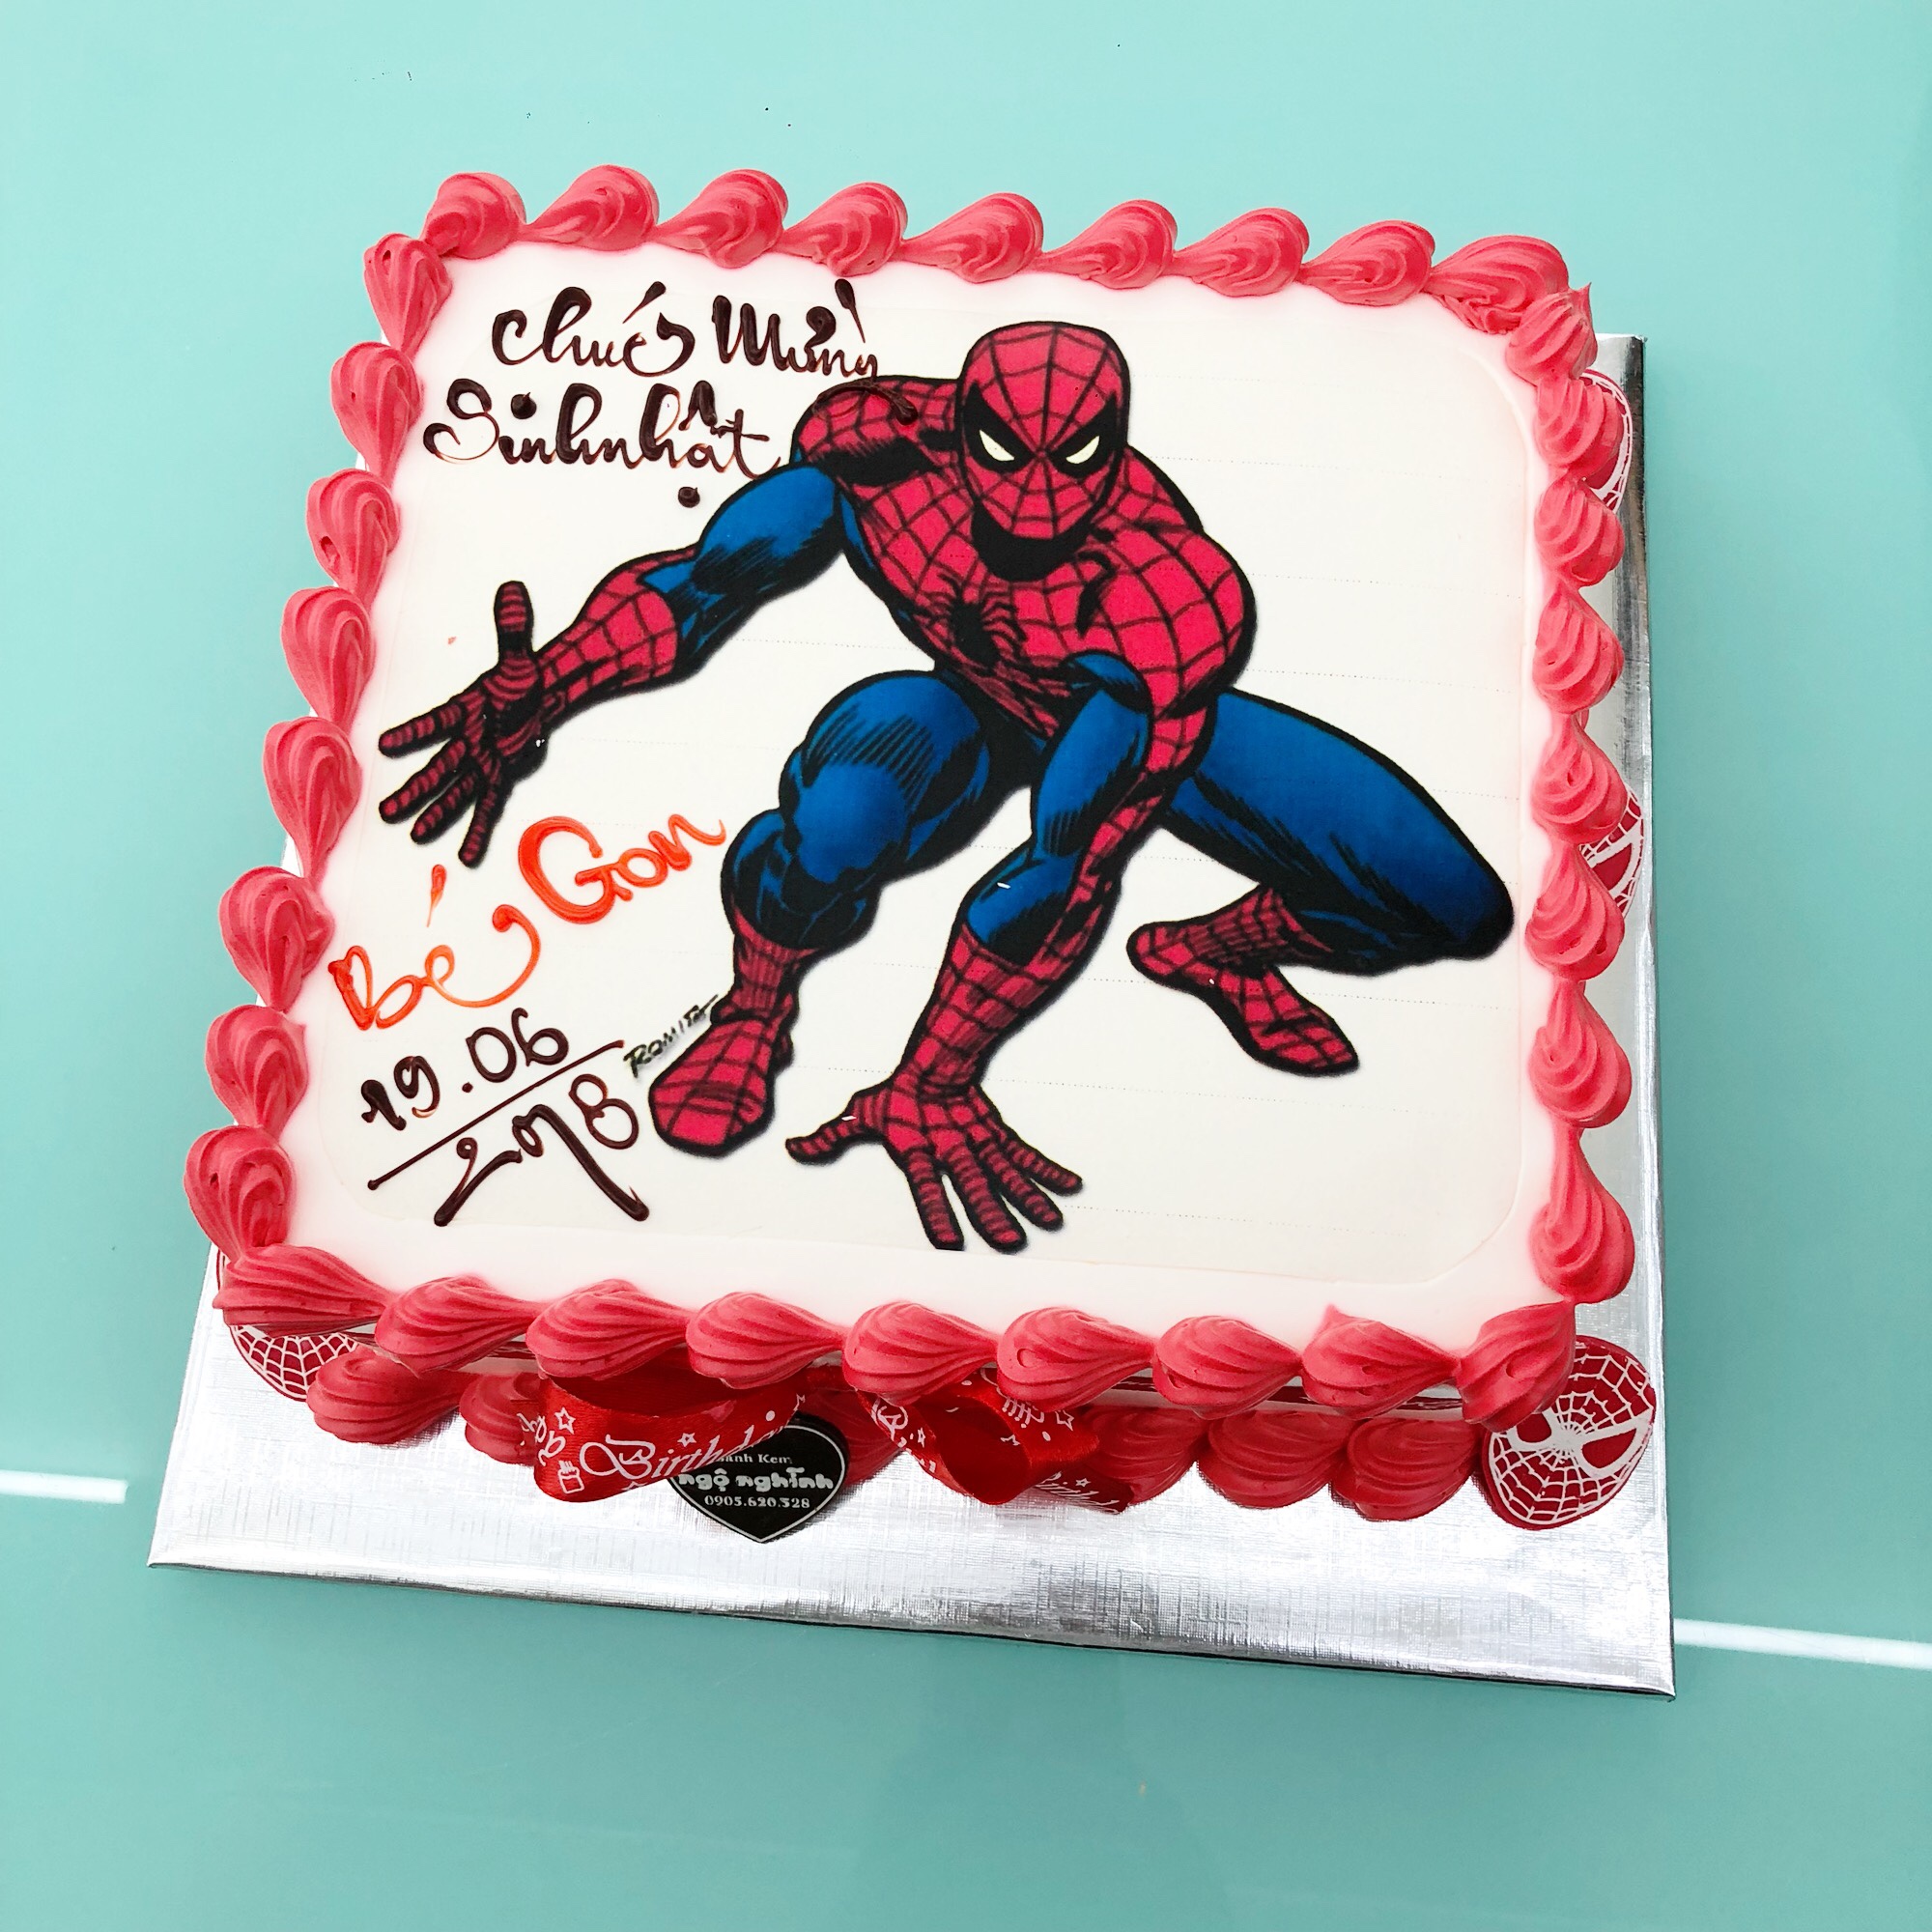 Bạn đang muốn chinh phục con của mình trong ngày sinh nhật? Hãy thử đổi vị bánh sinh nhật truyền thống bằng bánh sinh nhật siêu nhân người nhện. Với hình ảnh siêu anh hùng hấp dẫn, chắc chắn con bạn sẽ thích thú và tràn đầy năng lượng.